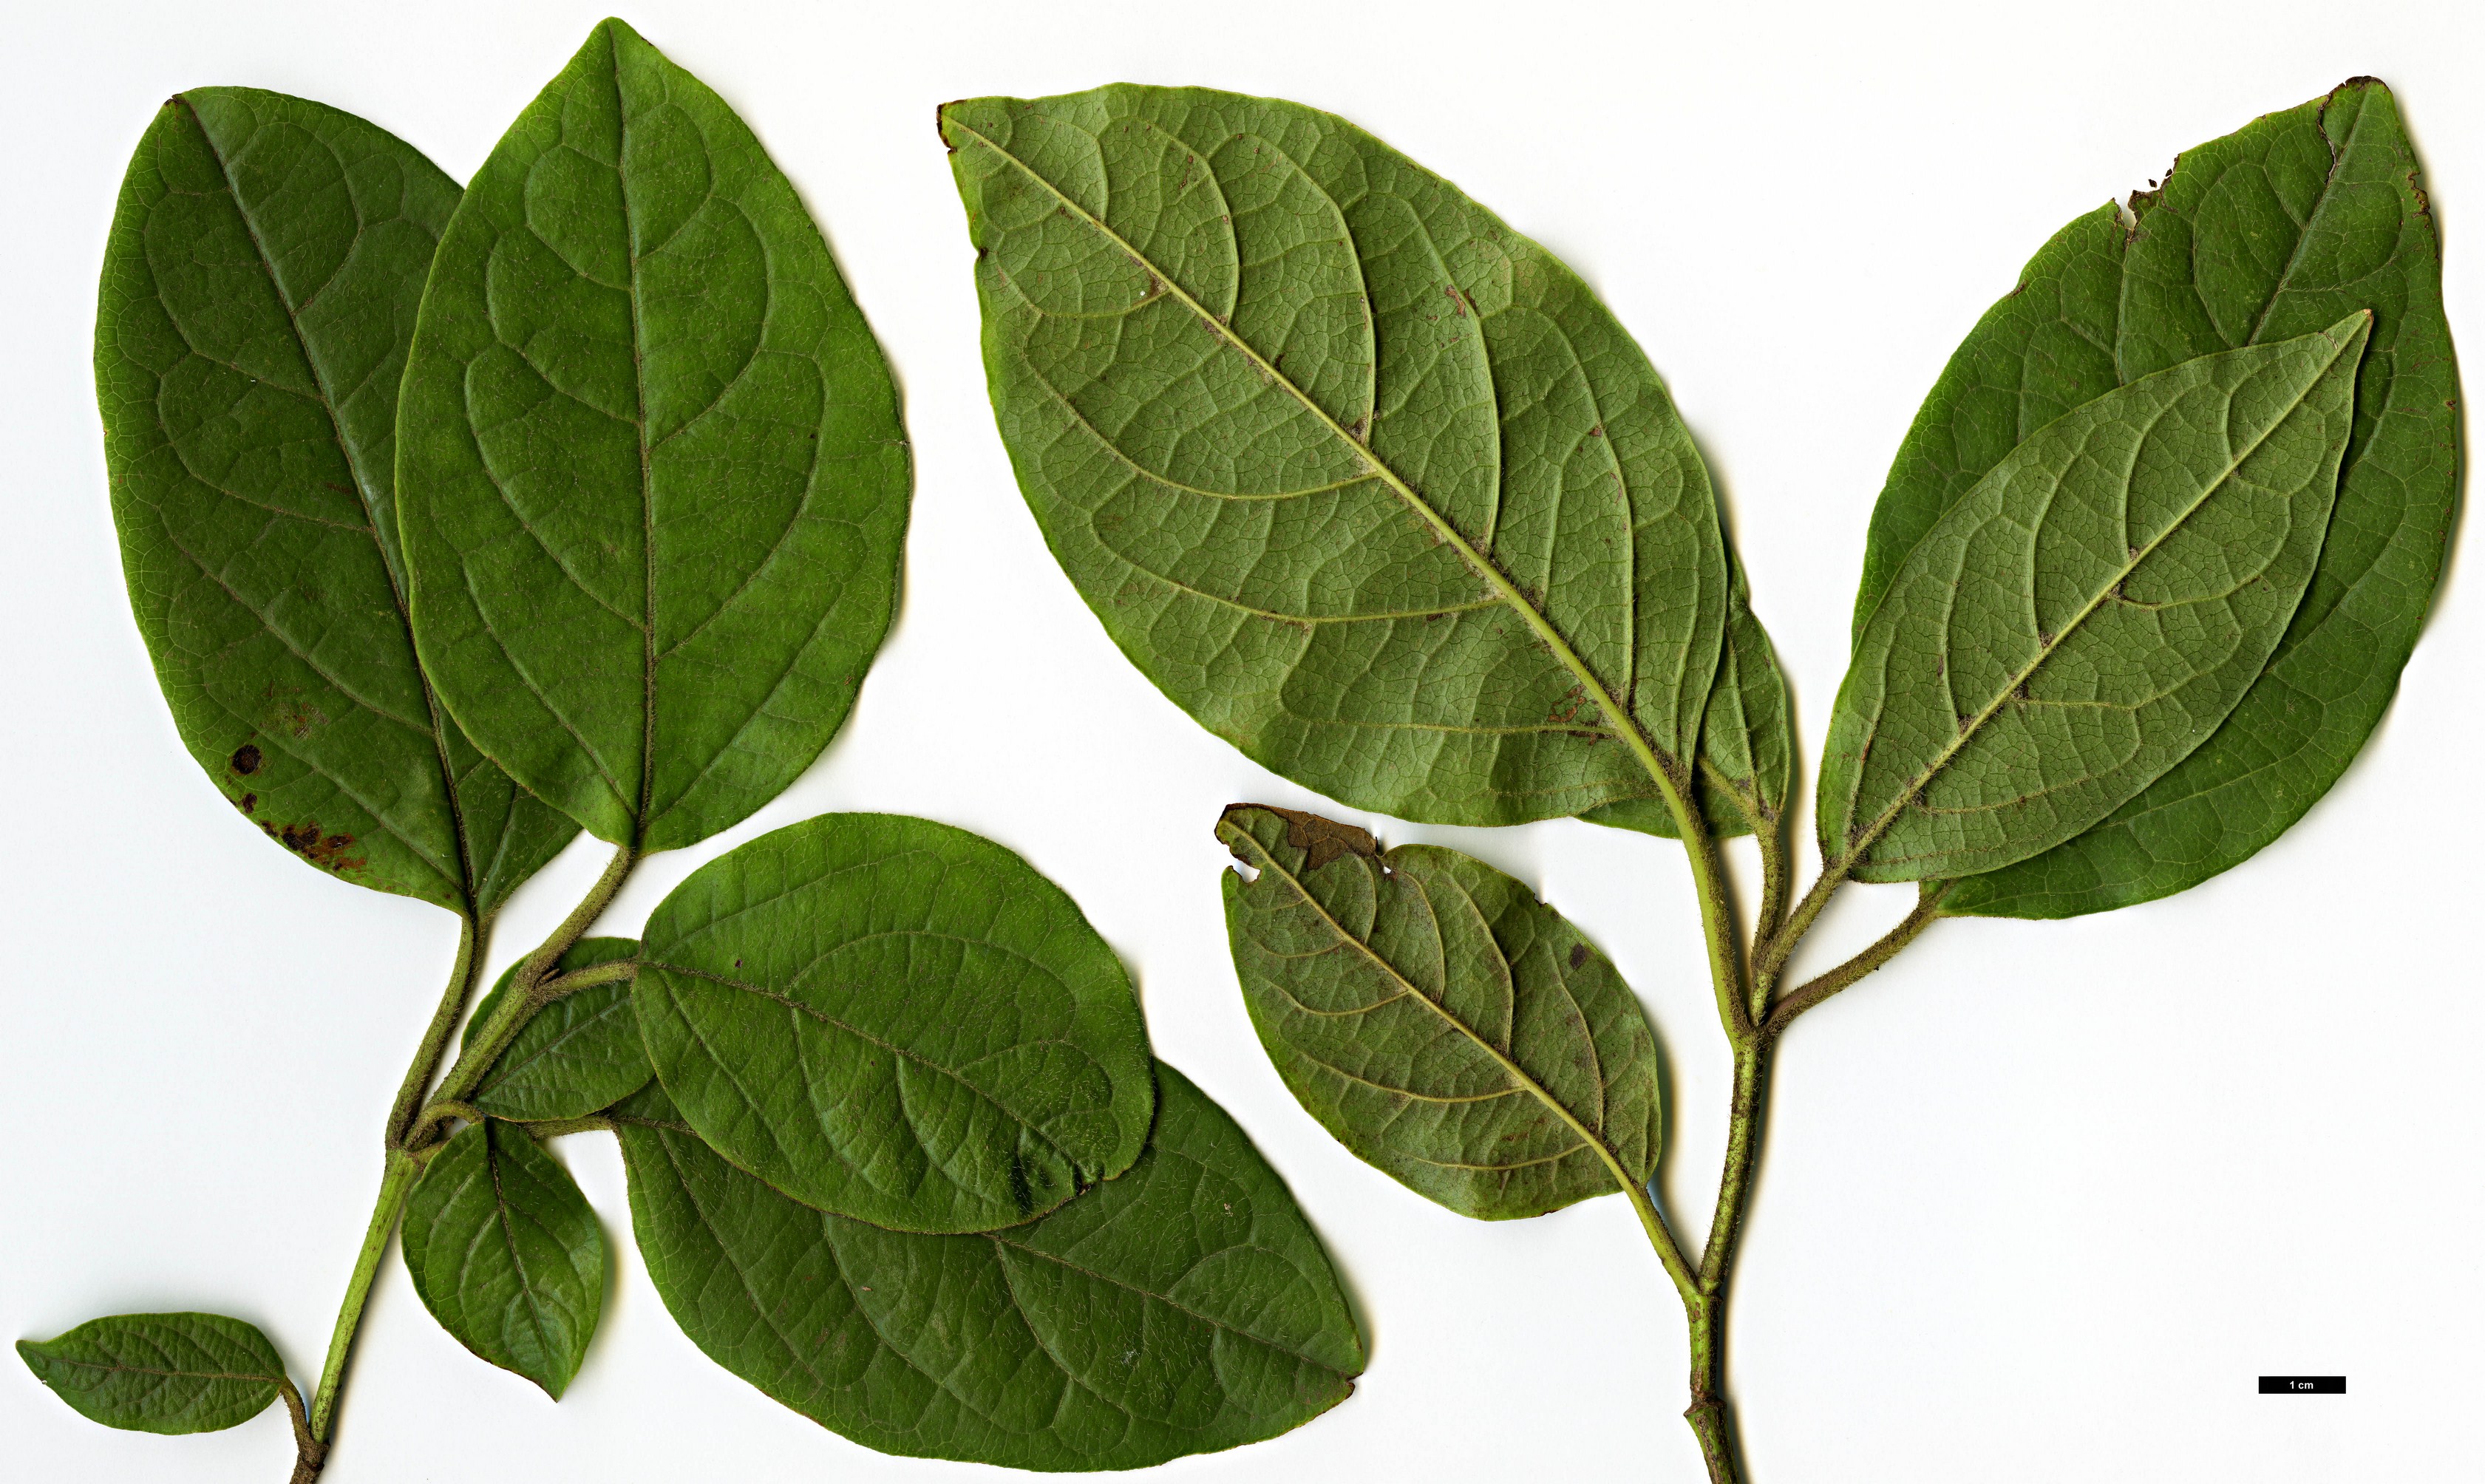 High resolution image: Family: Adoxaceae - Genus: Viburnum - Taxon: rugosum